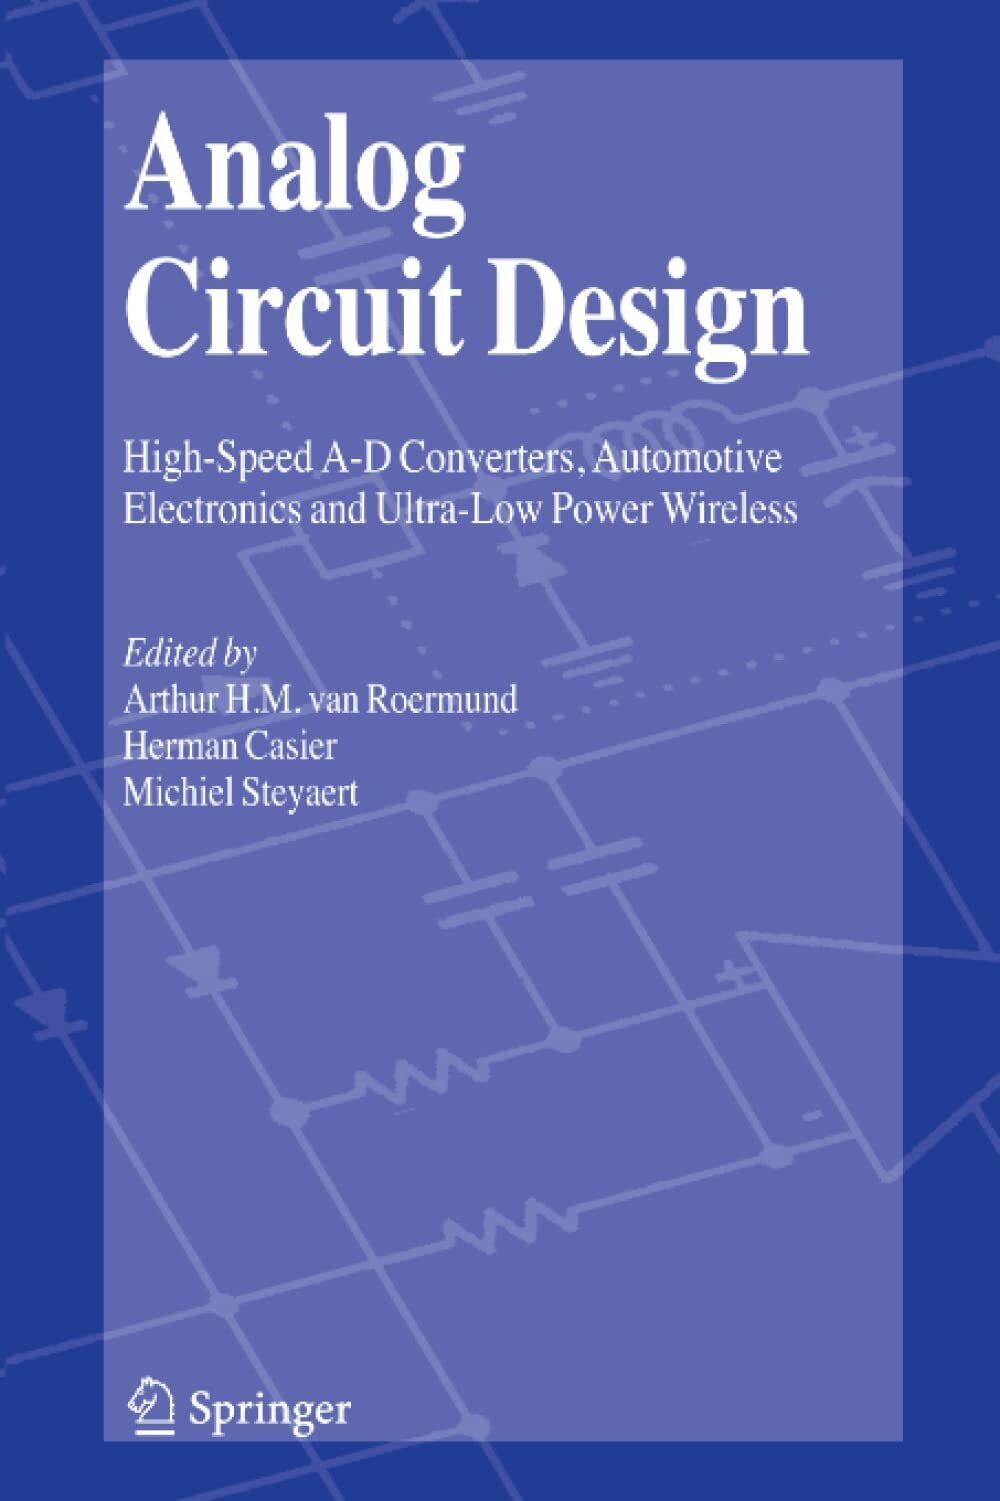 Analog Circuit Design - Arthur H.M. van Roermund - Springer, 2010